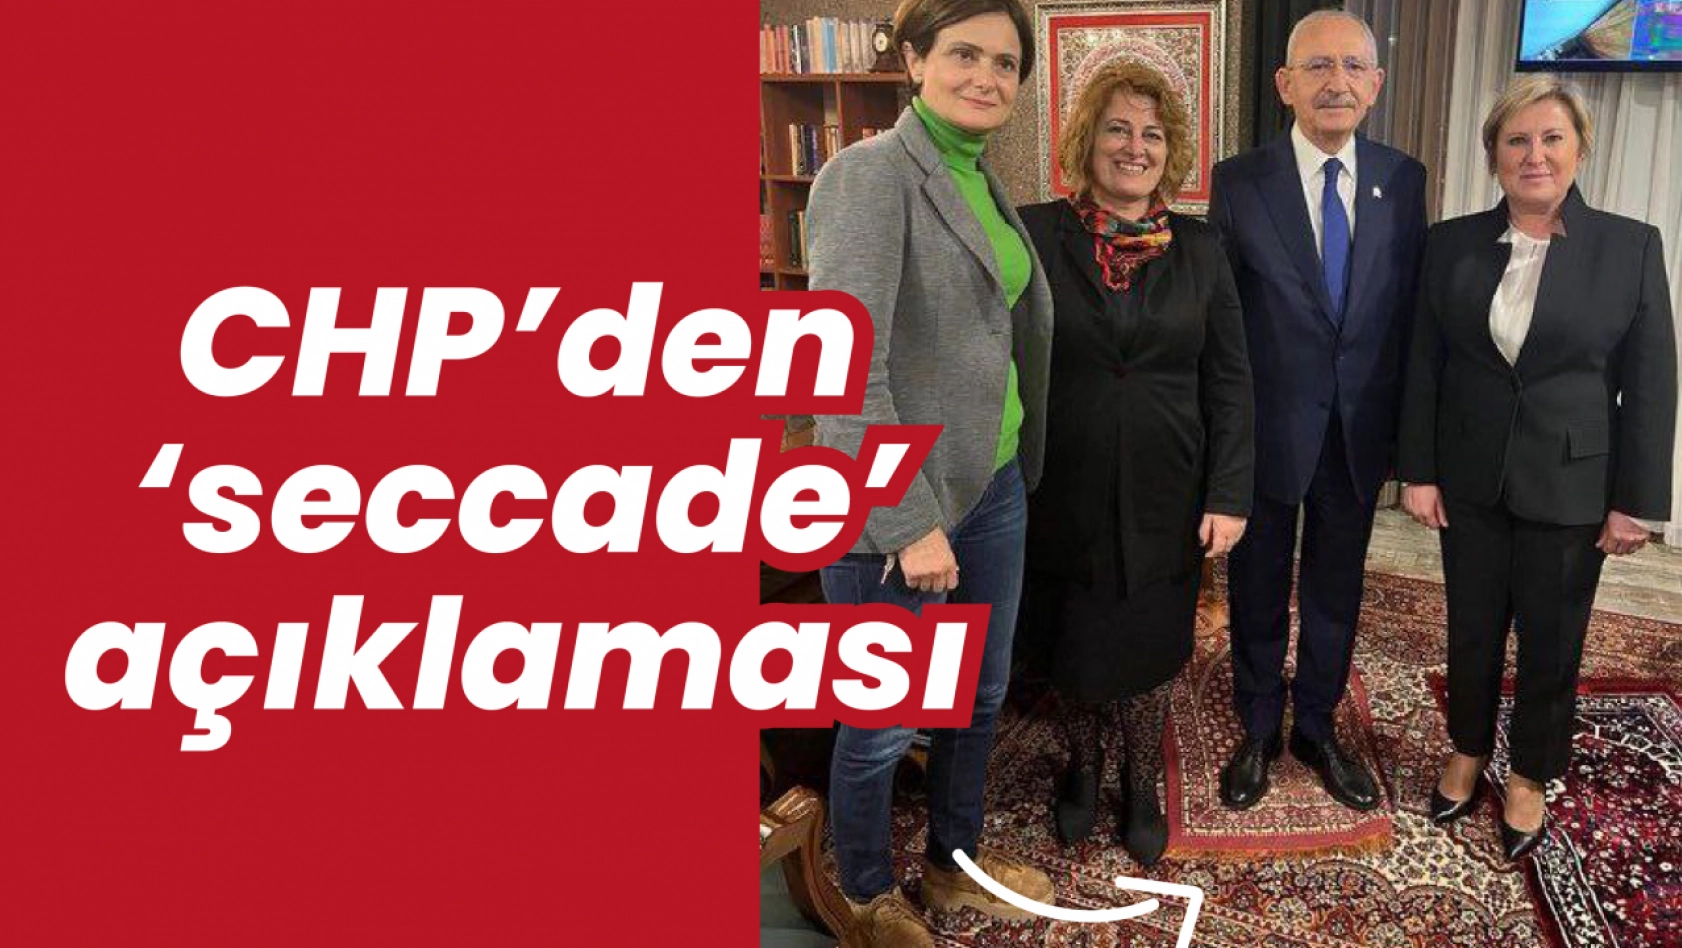 Kılıçdaroğlu'nun seccadeye basması sosyal medyayı salladı